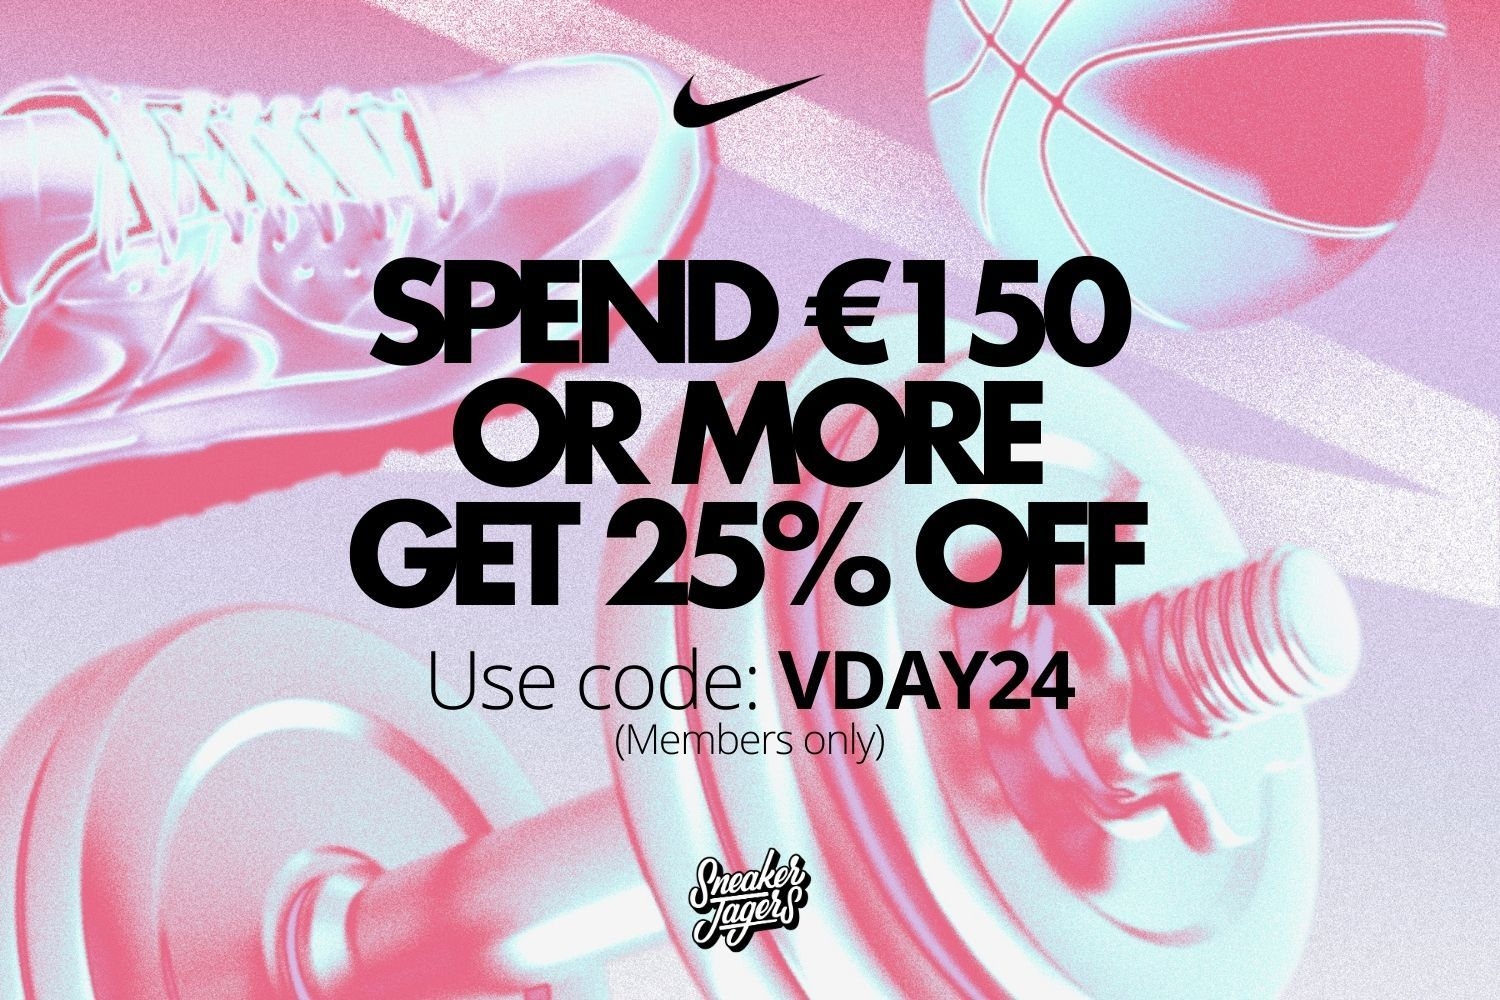 Nike bietet bis zu 25% im Valentine's Sale + ein Giveaway mit Sneakerjagers